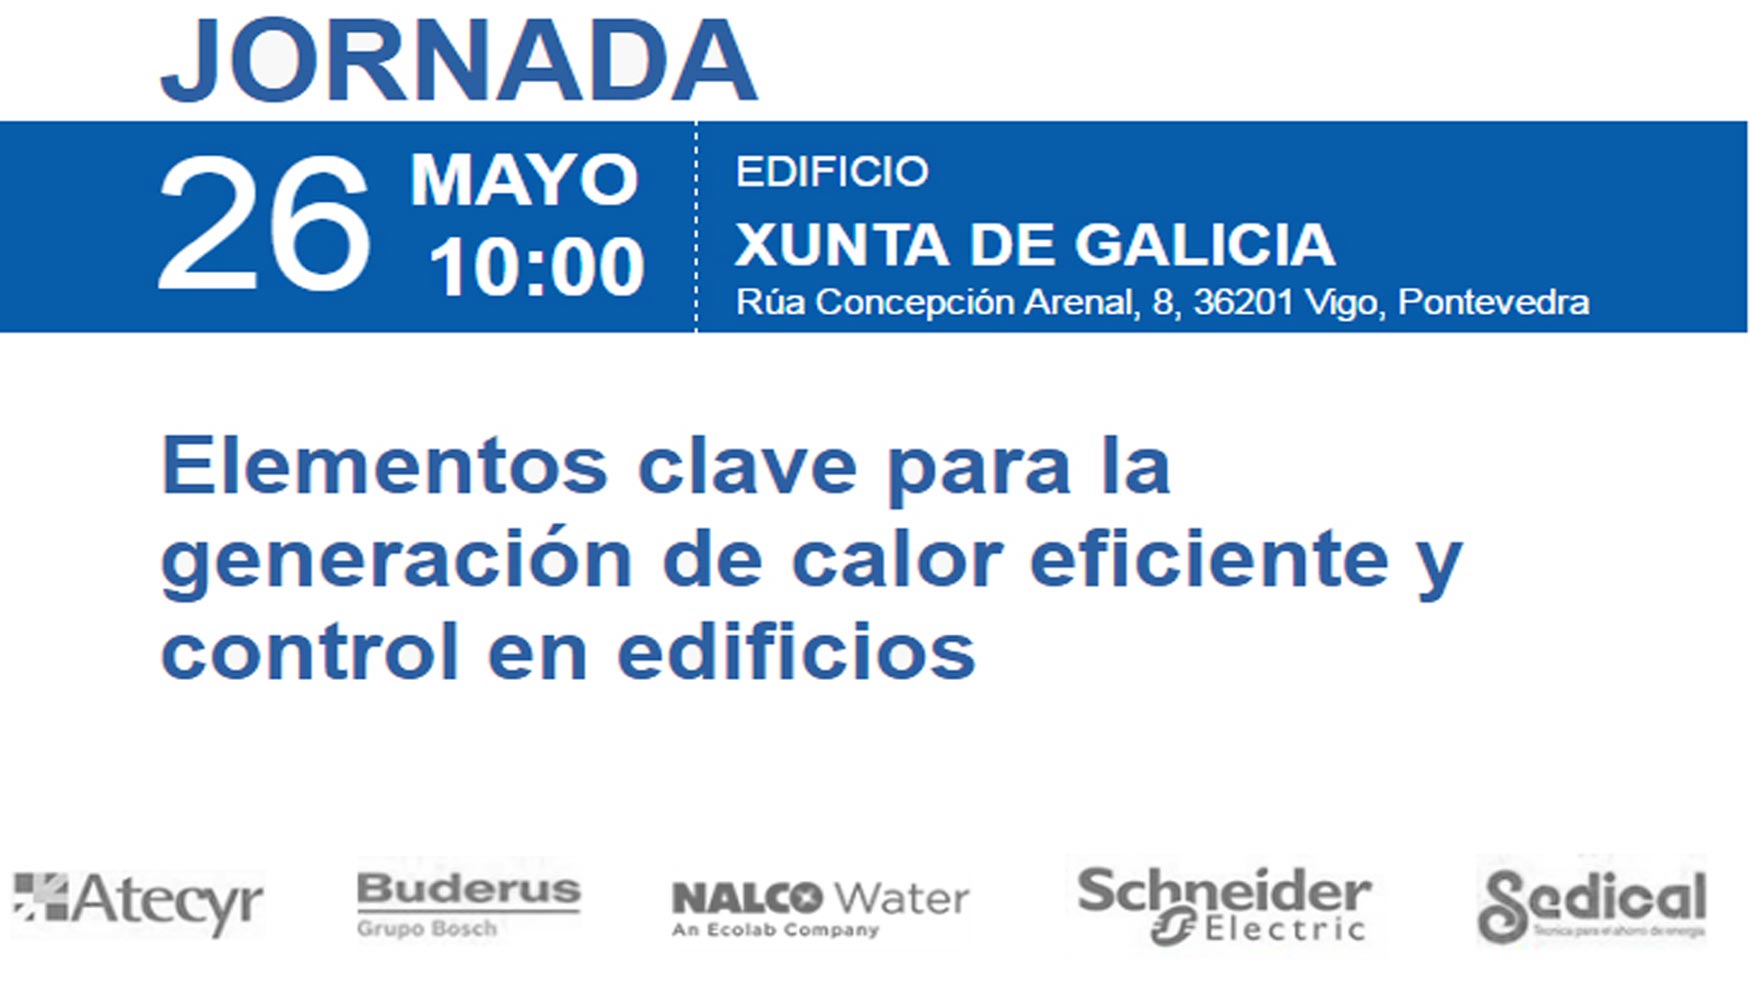 Elementos clave para la generacin de calor eficiente y control de edificios, el 26 de mayo en Vigo